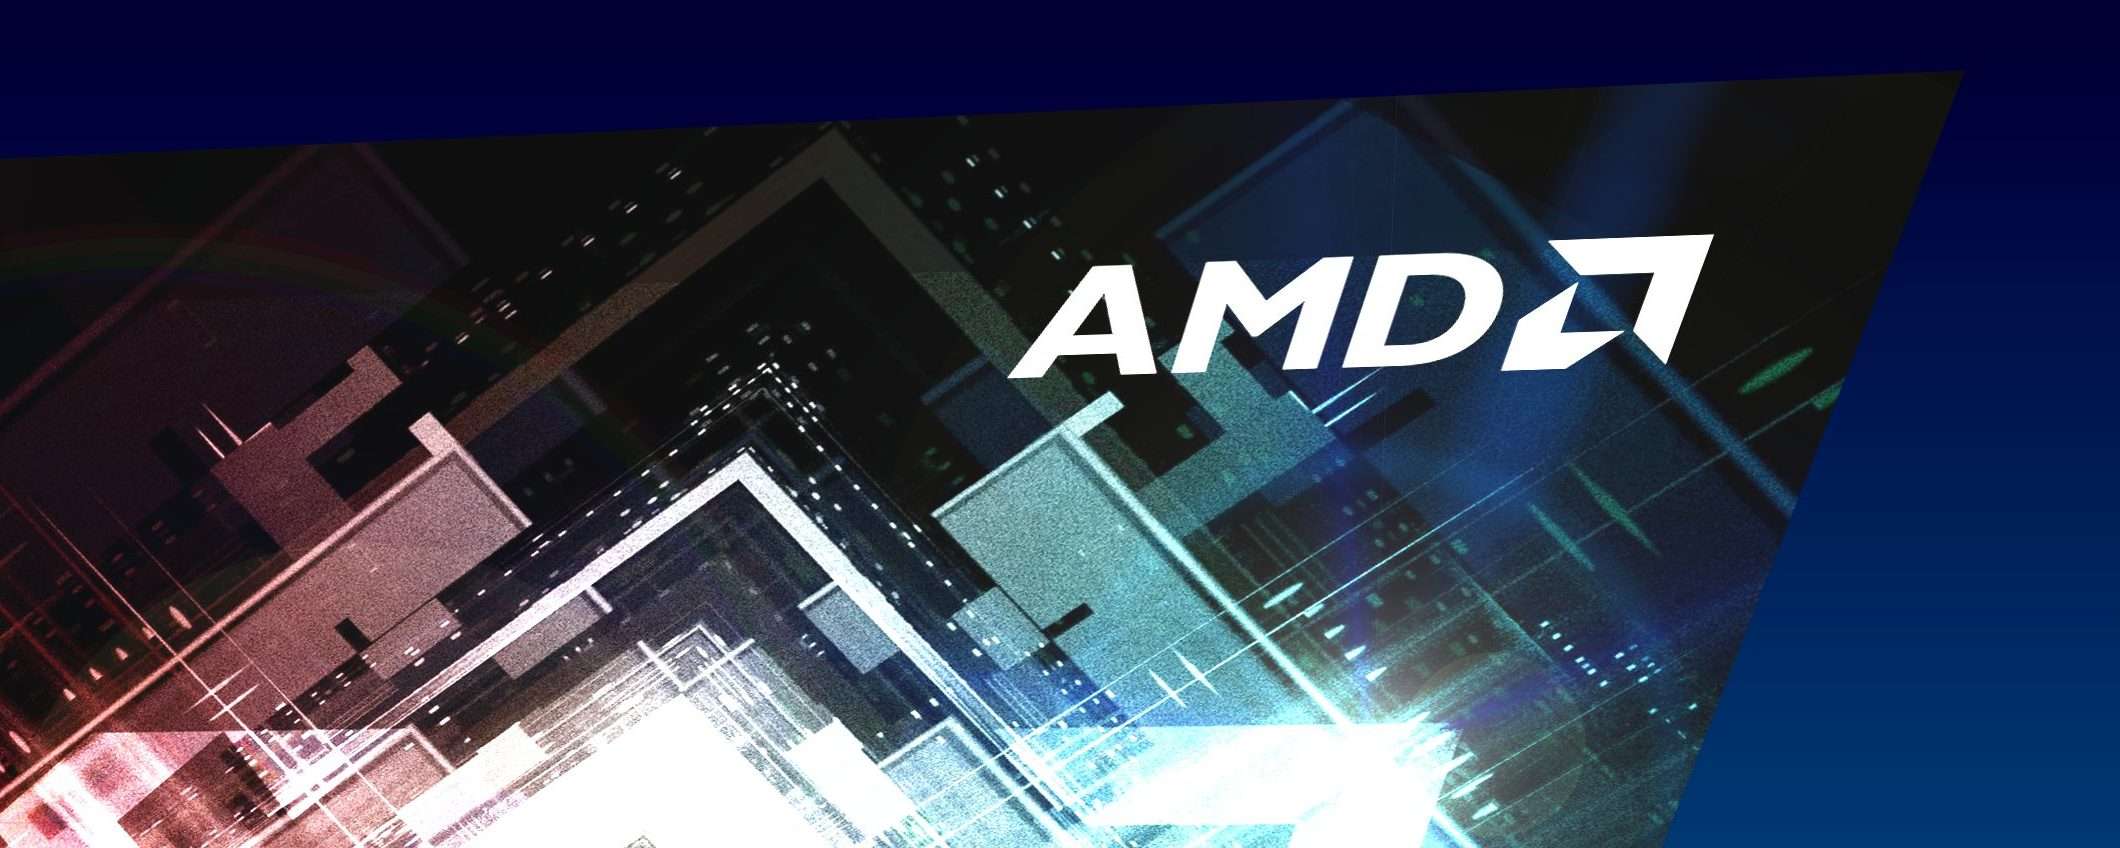 AMD sposa Xilinx per il calcolo ad alte prestazioni